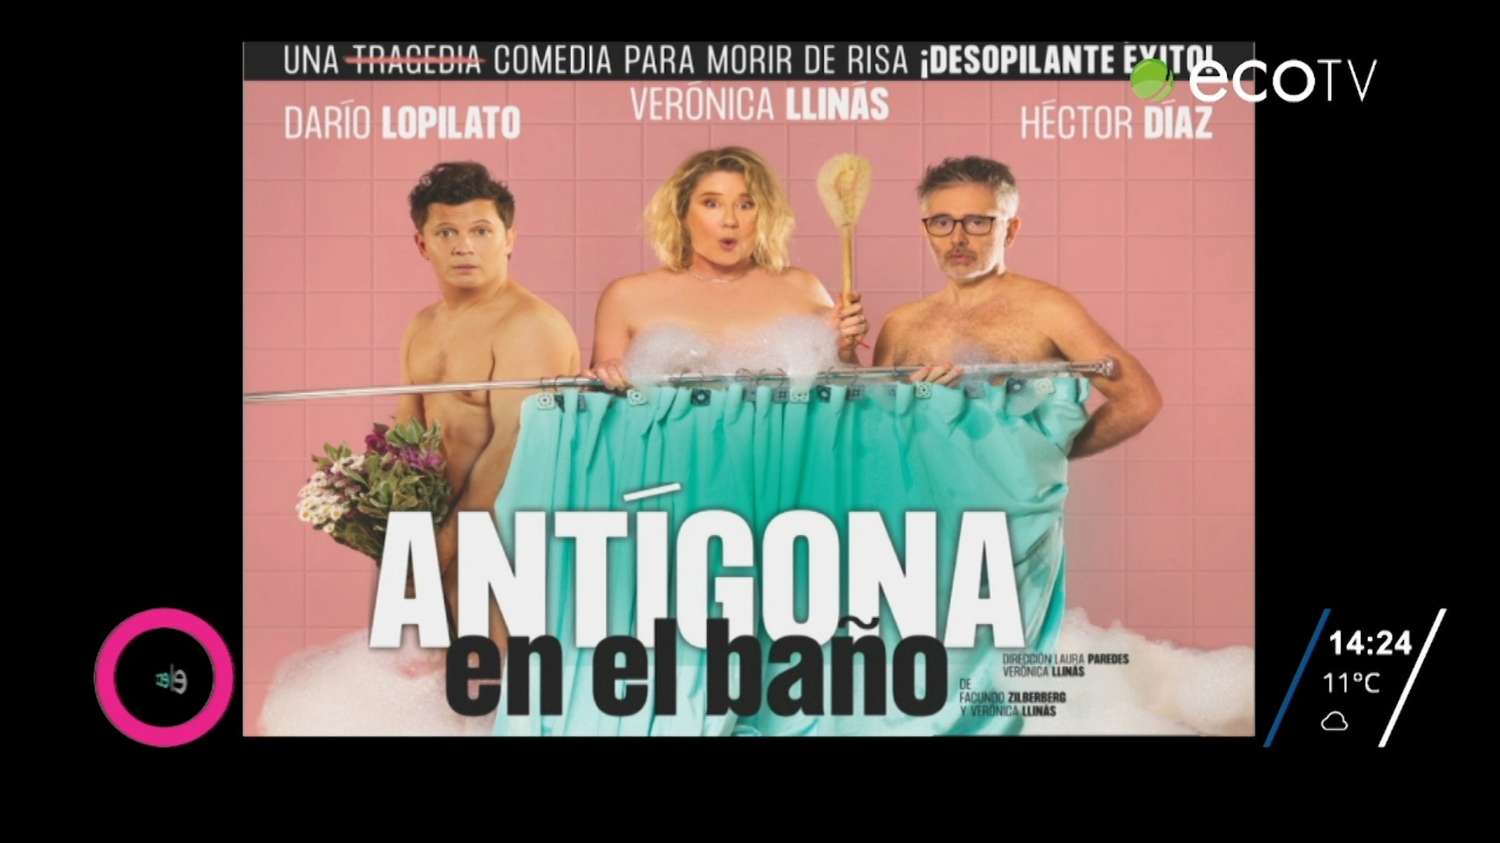 Se presenta en Tandil la obra de teatro: "Antígona en el baño"